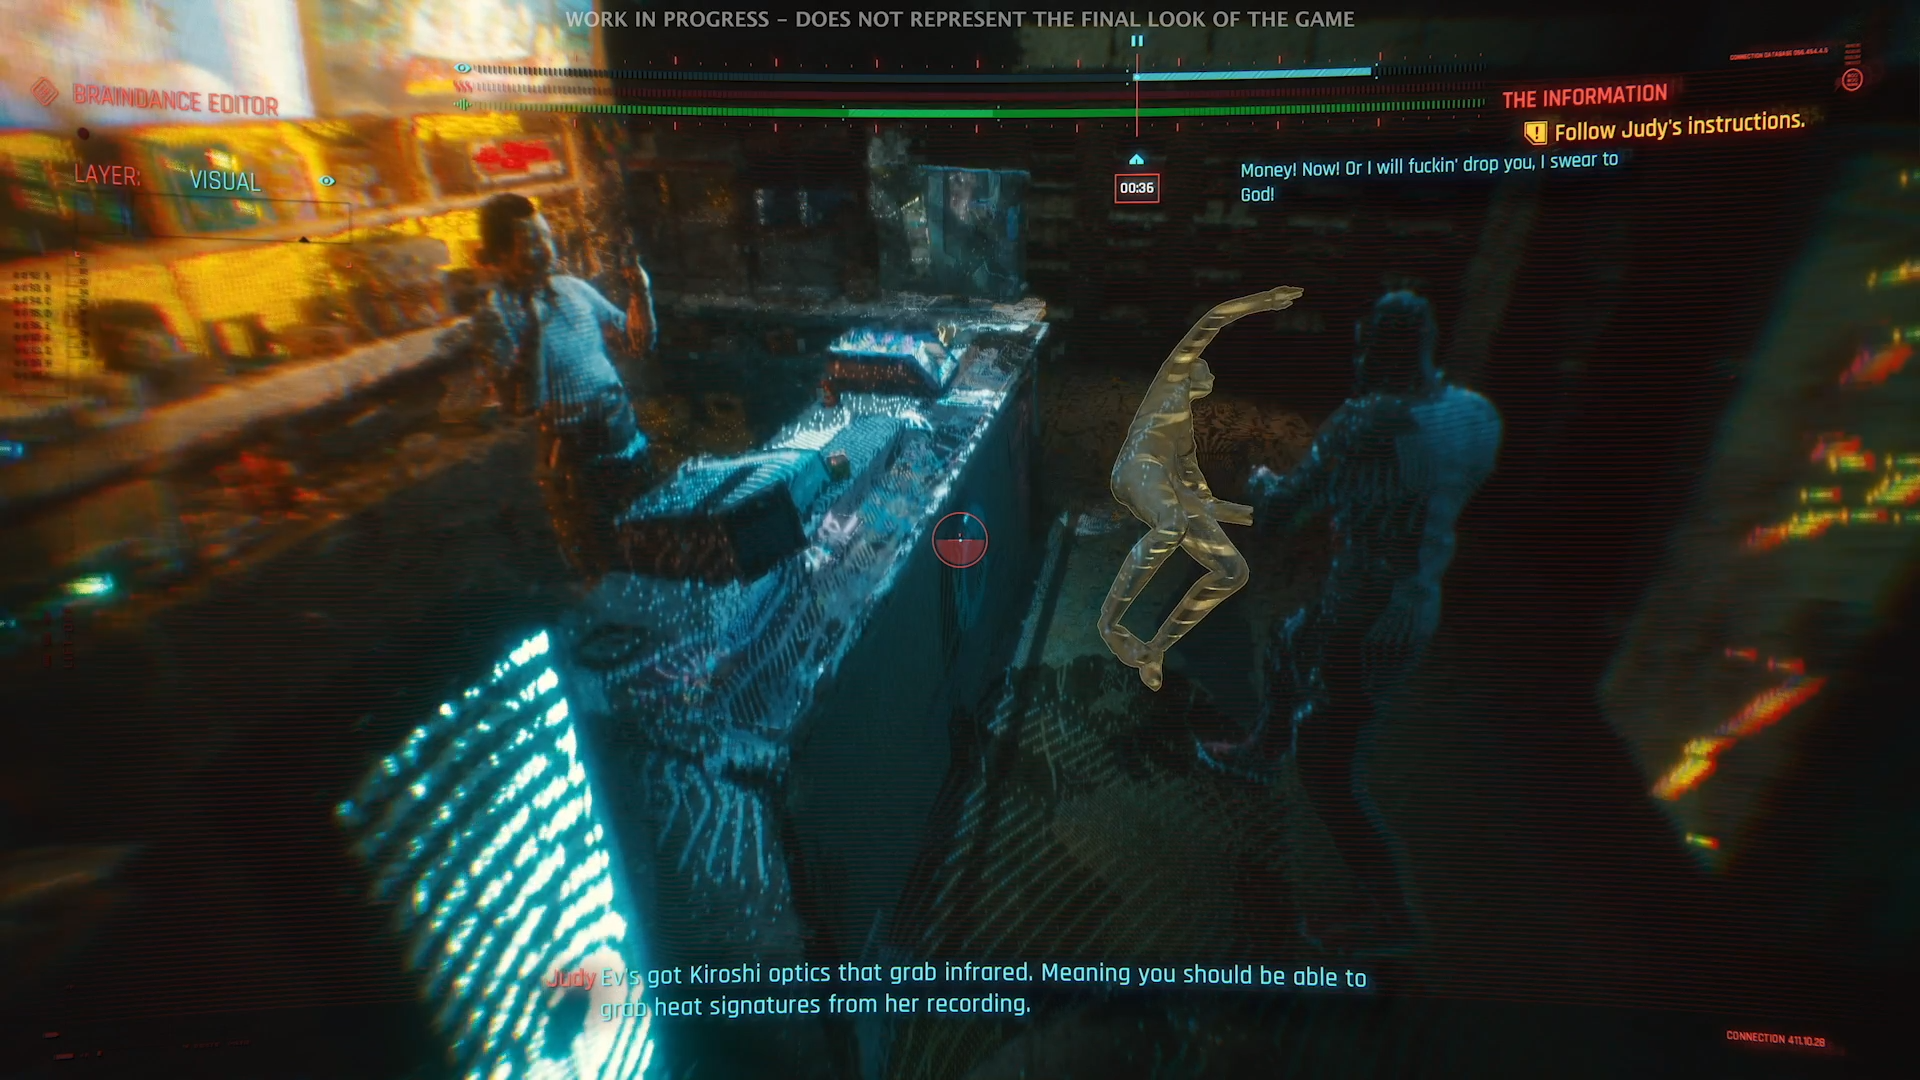 Cyberpunk 2077 Gameplay Details Braindance Editor Investigations